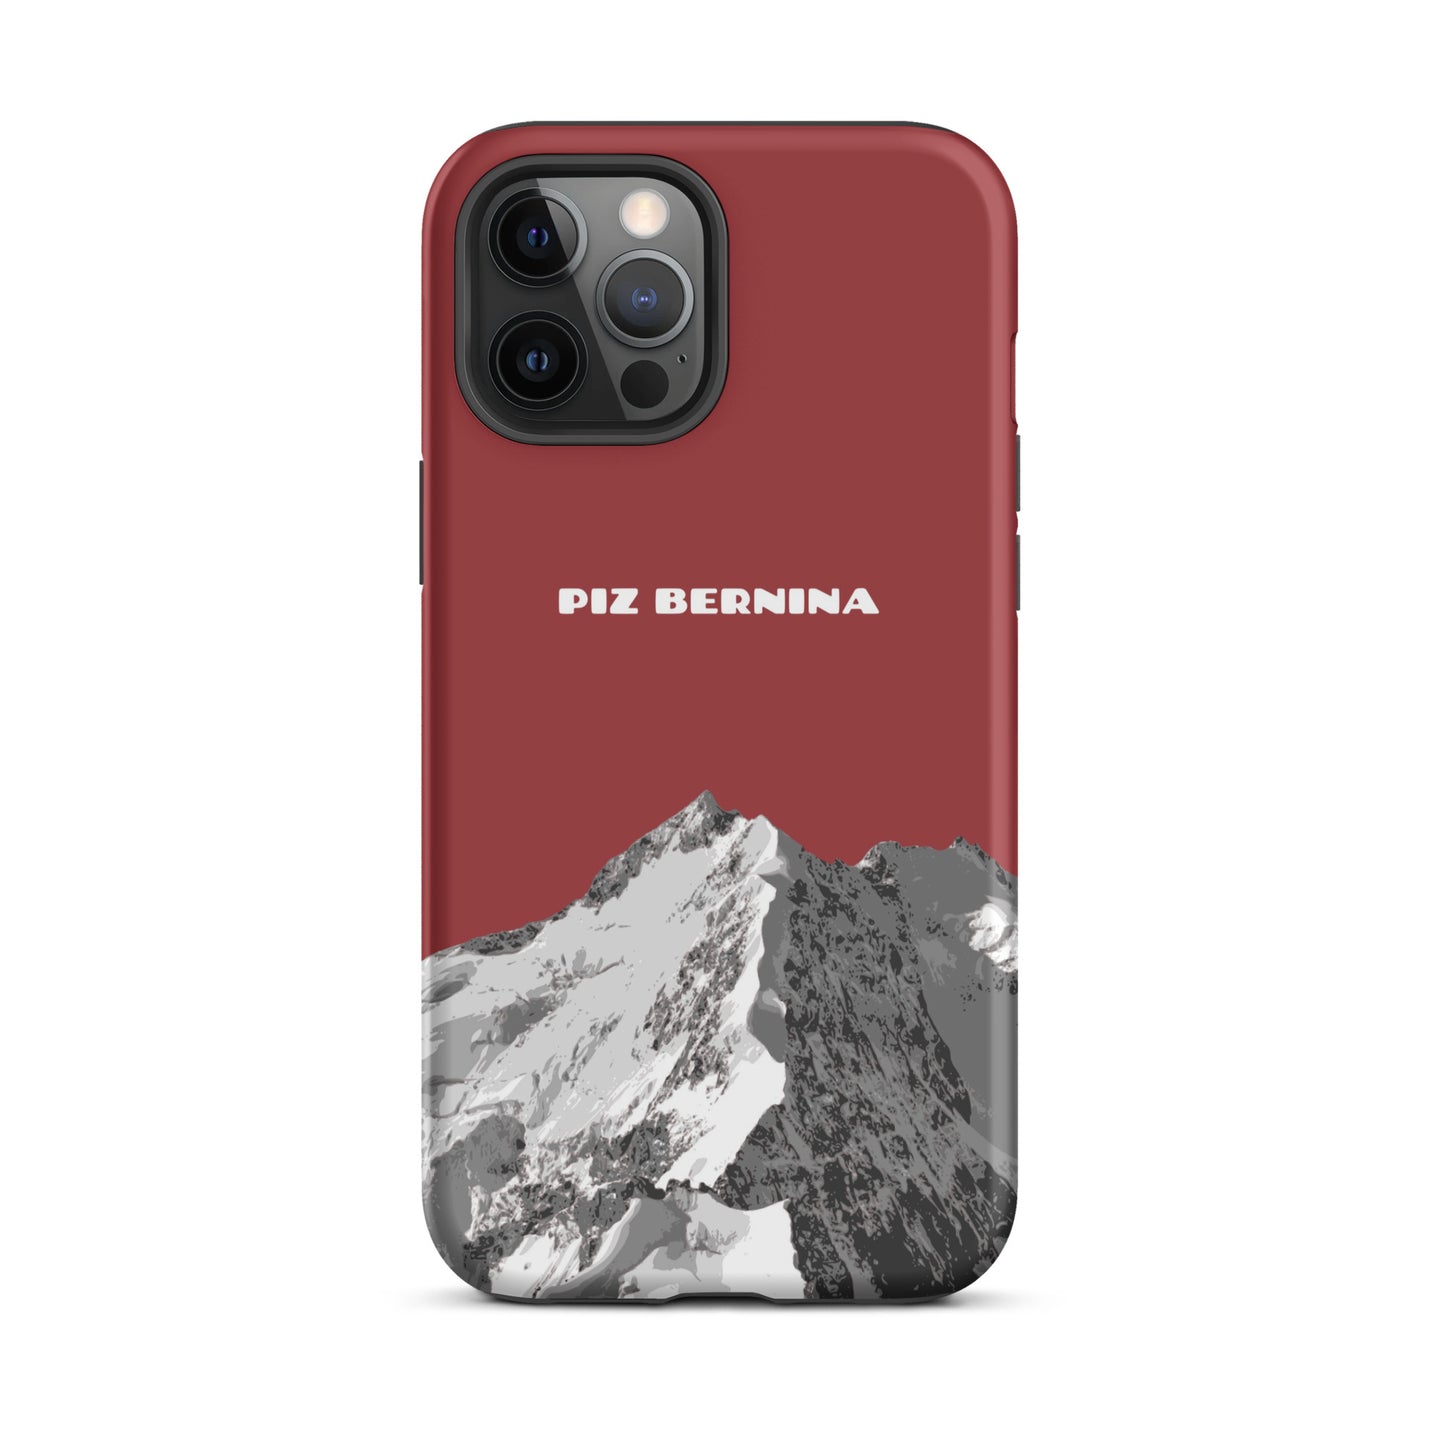 5Hülle für das iPhone 12 Pro Max von Apple in der Farbe Rot, dass den Piz Bernina in Graubünden zeigt.